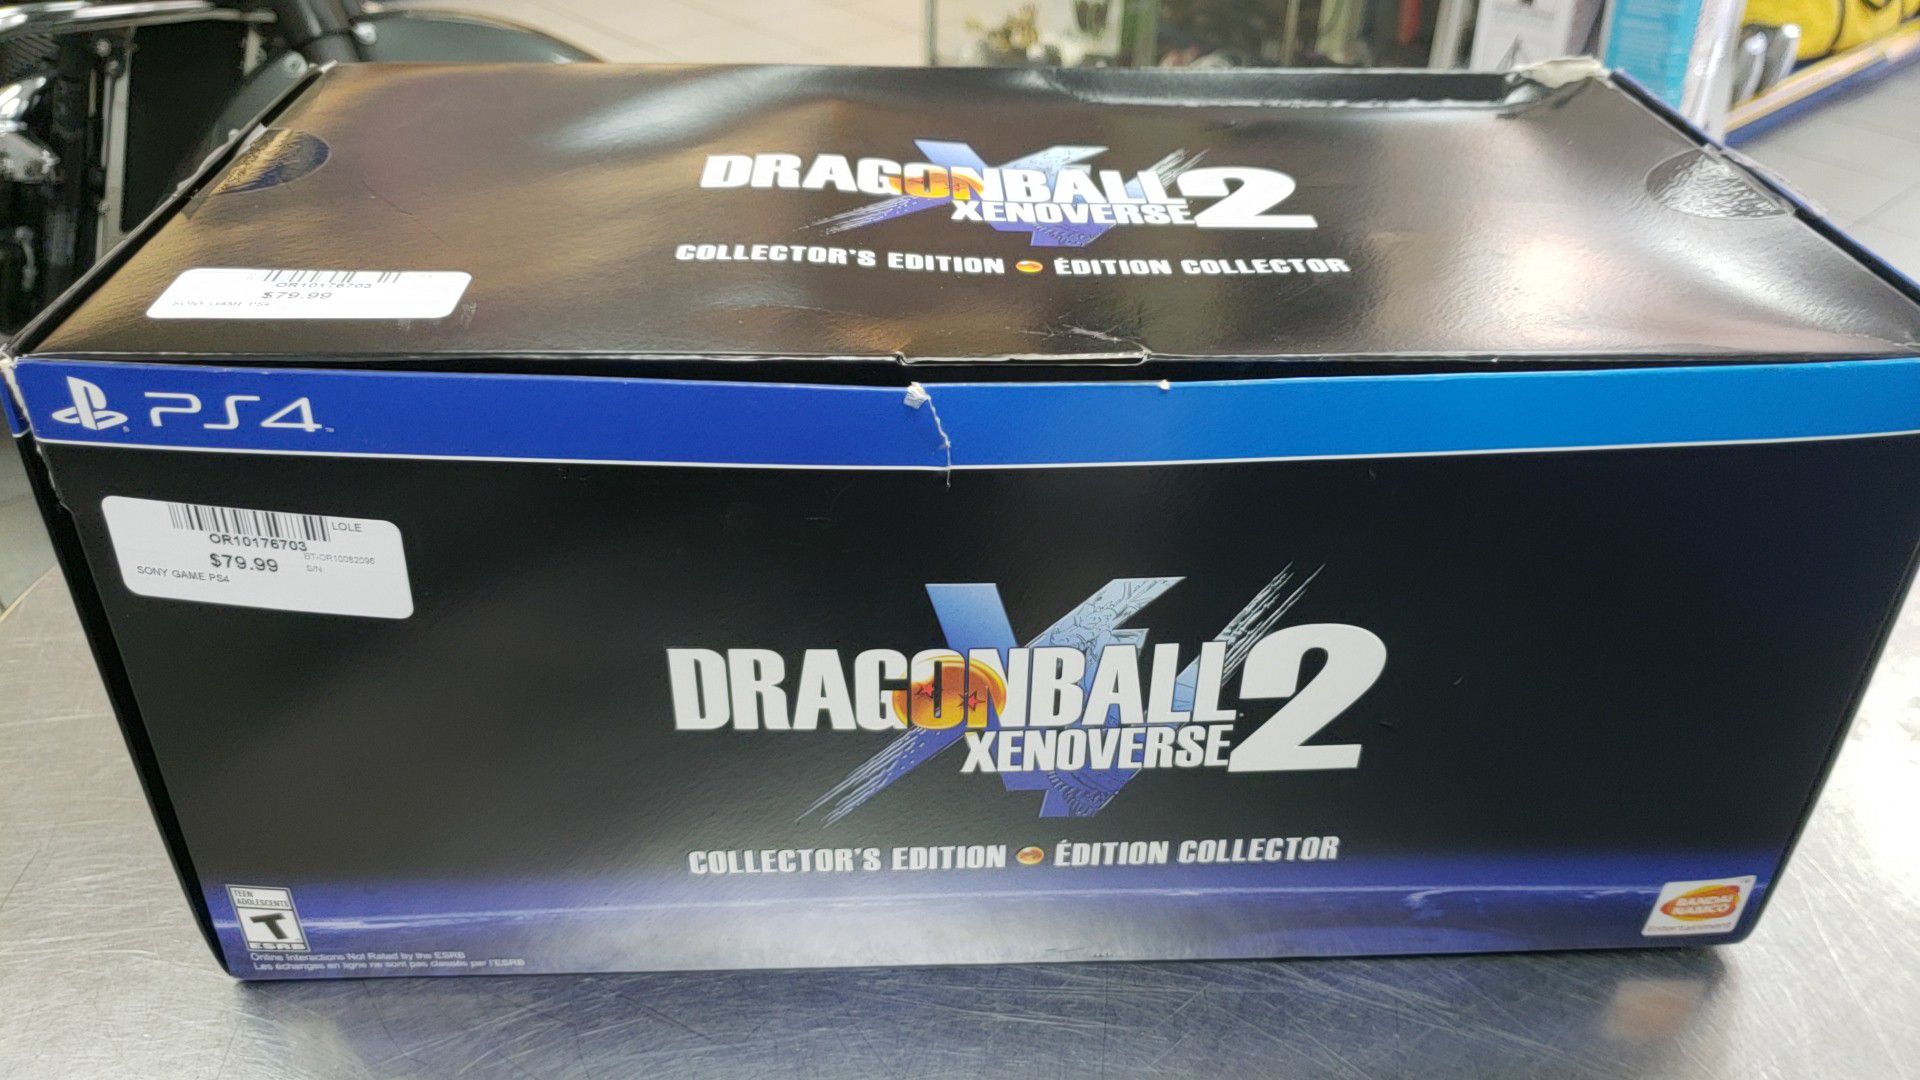 Dragonball 2 Xenoverse PS4 Collector Edition